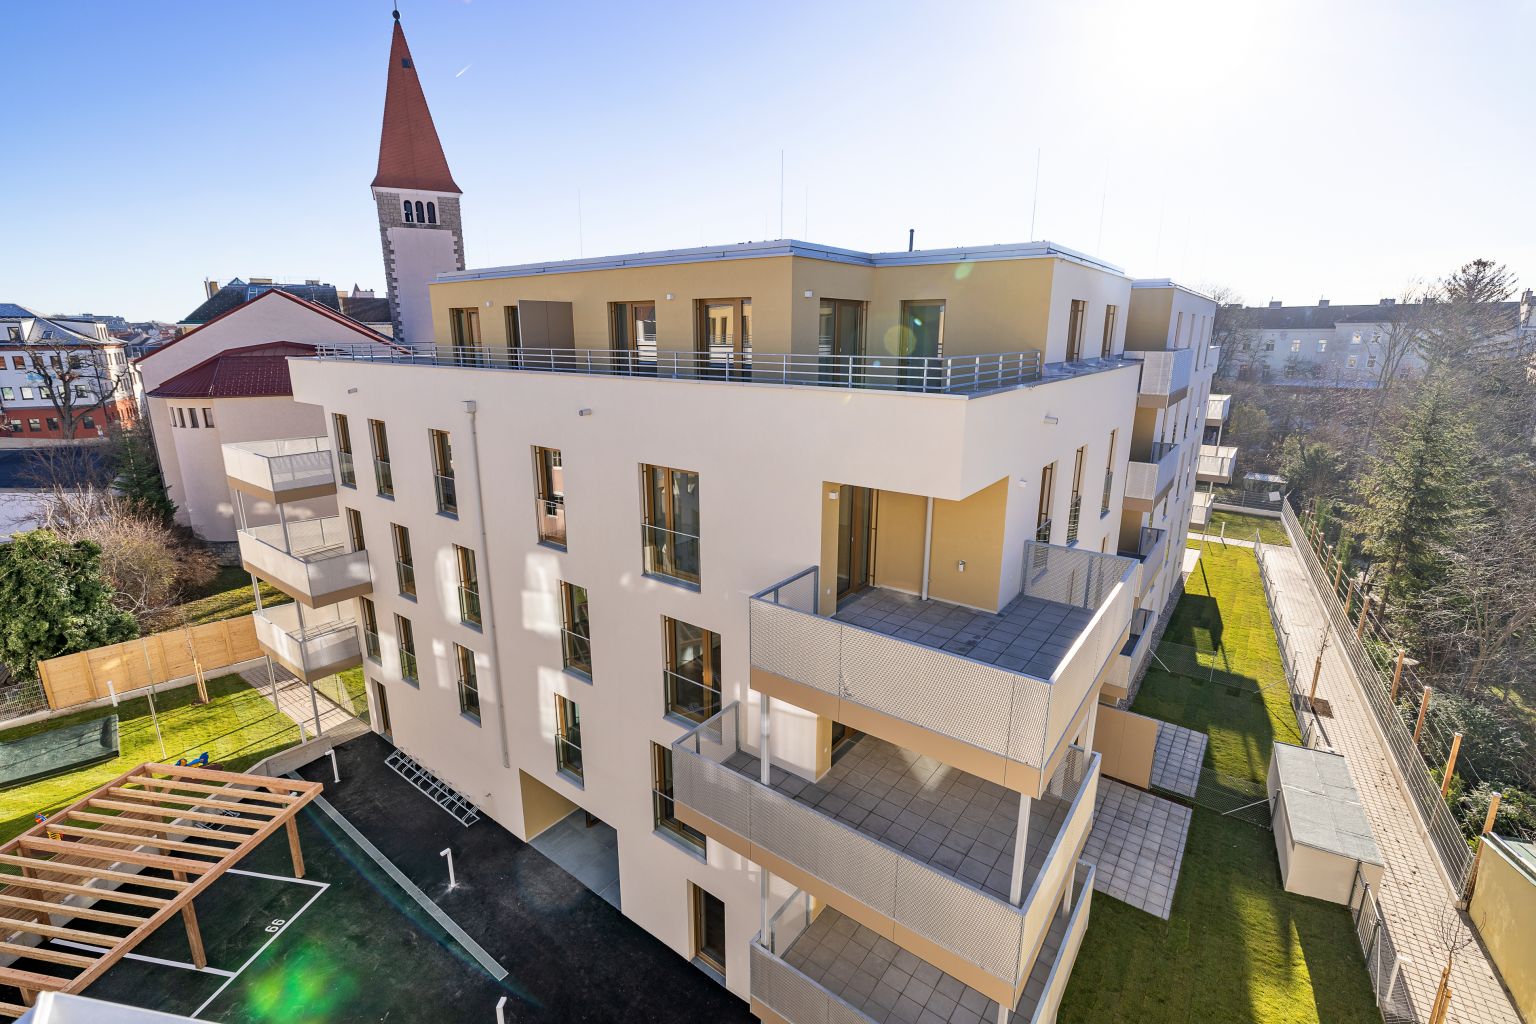 67 Wohnungen des Projekts „KOLL.home“ in Wiener Neustadt fertiggestellt